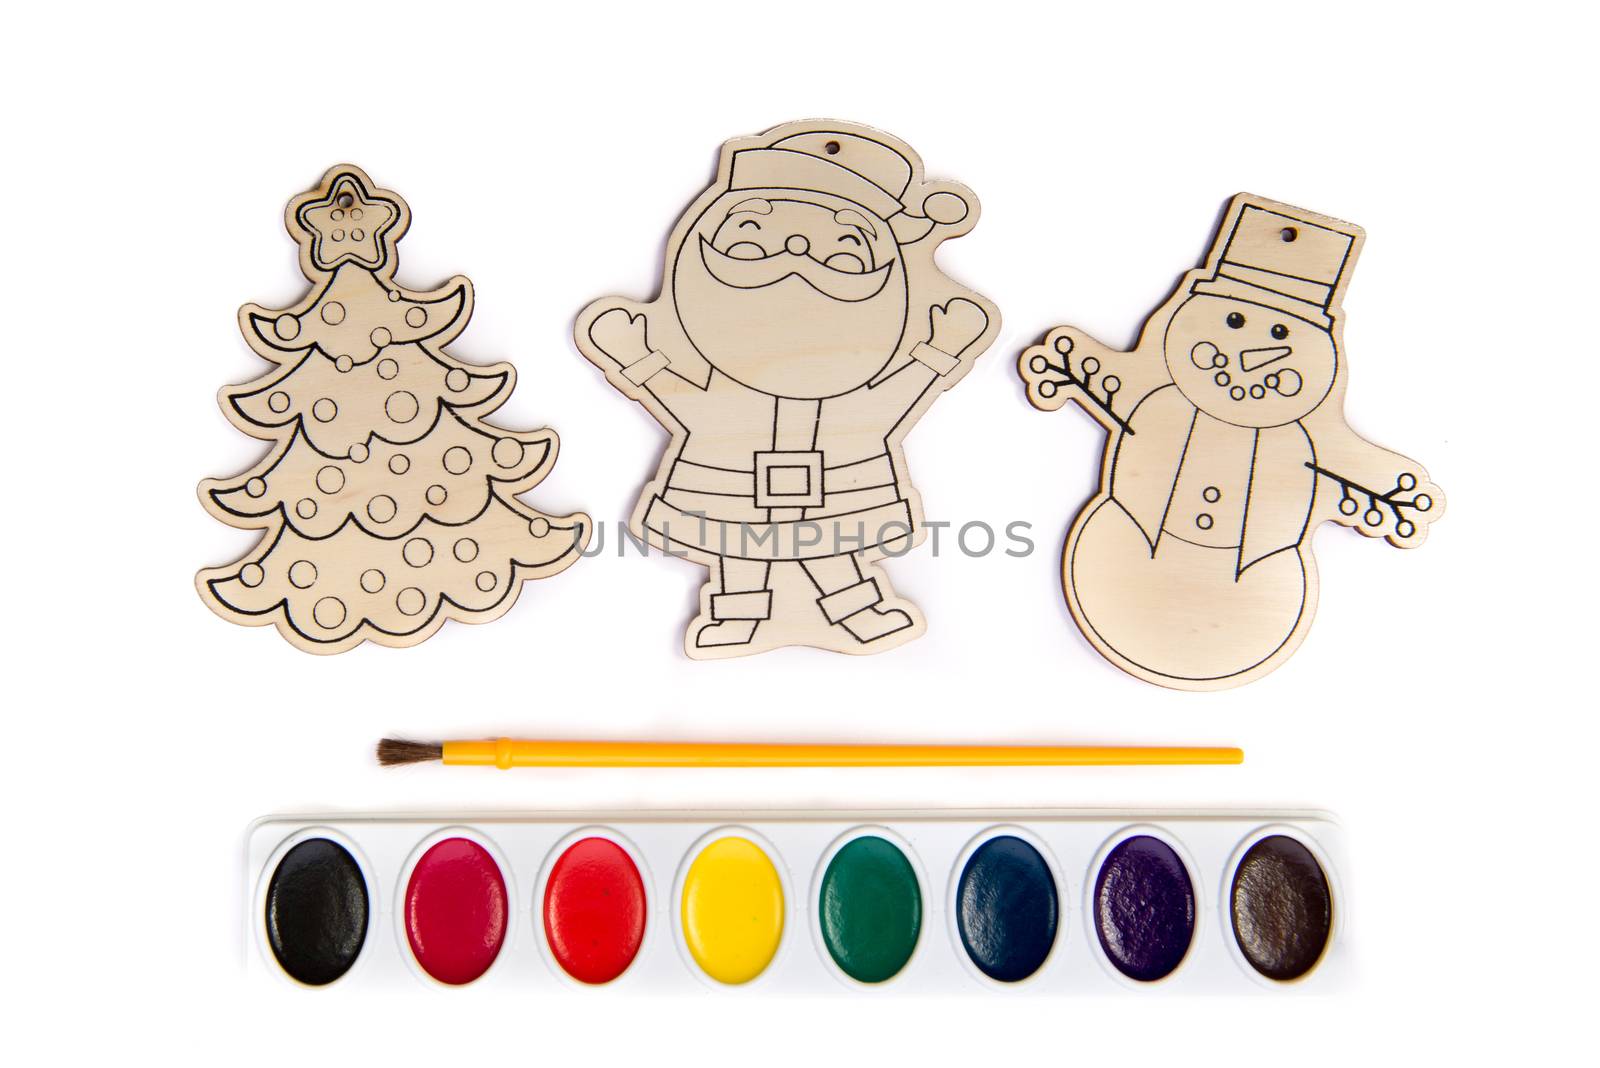 Christmas Wood Cutouts Coloring Kit by viscorp